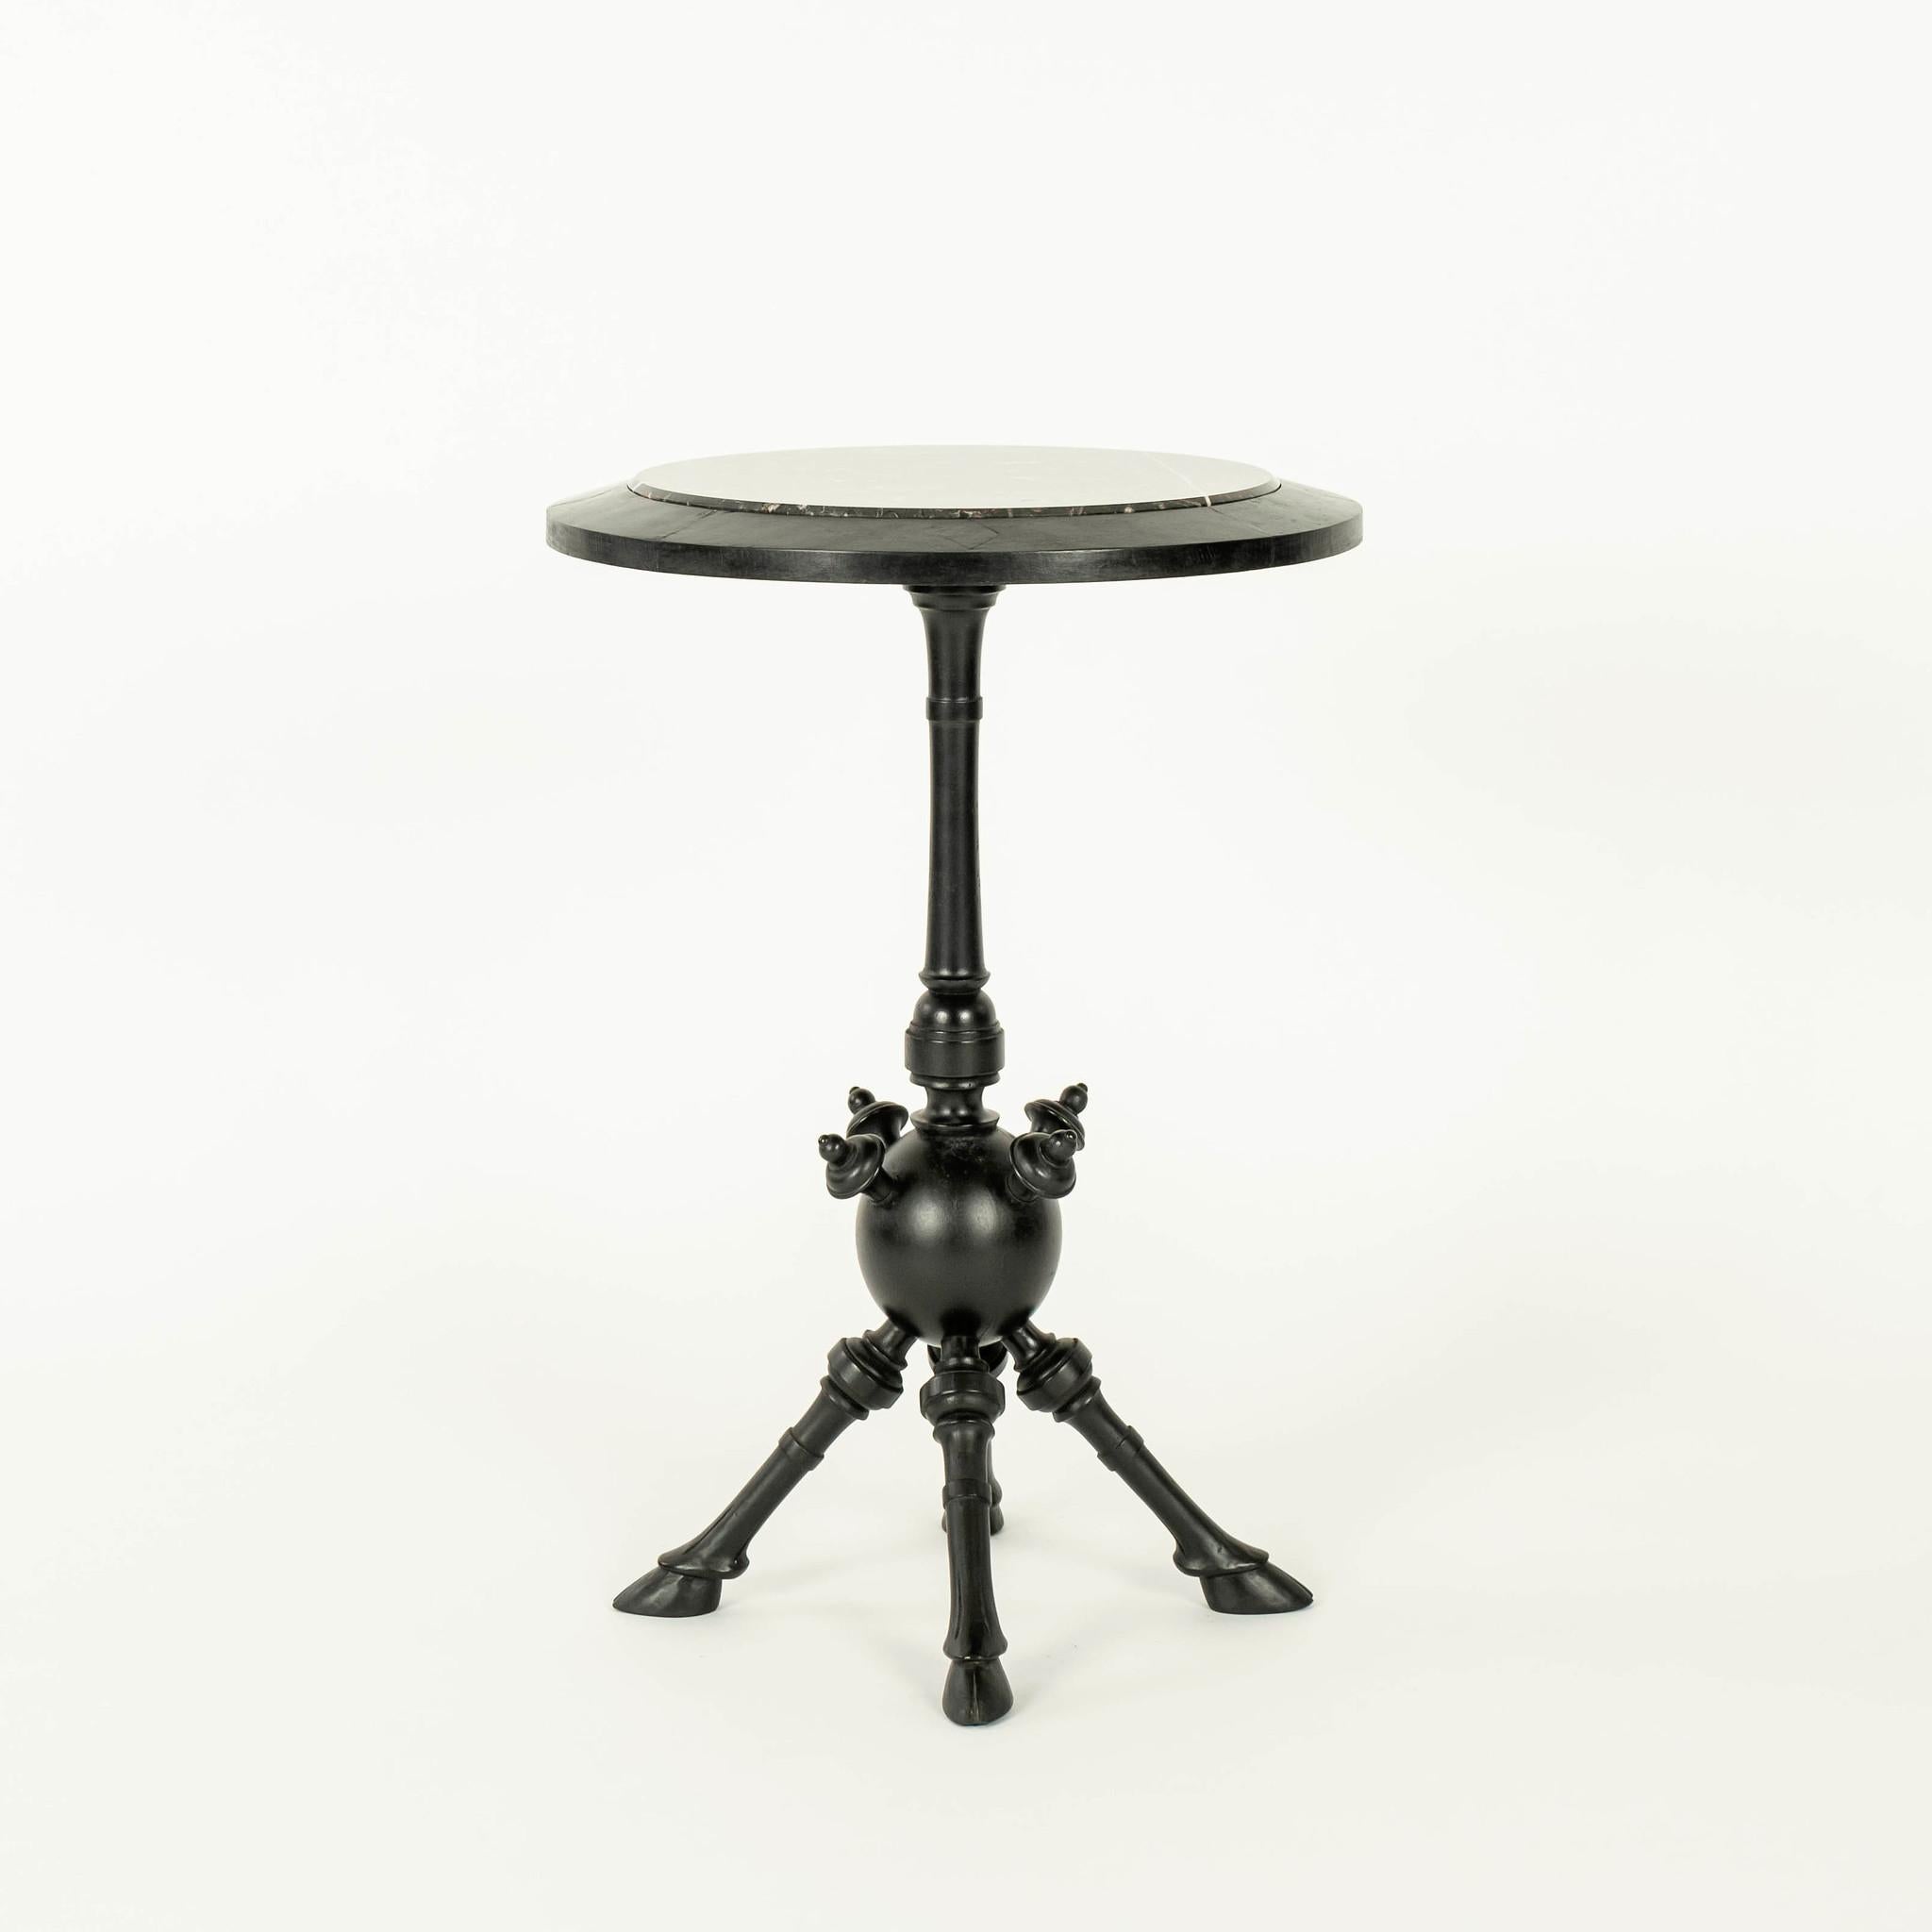 Einzigartiger Tisch im ästhetischen Stil, ebonisiert, mit schwarzer Marmorplatte und gedrechseltem, spindelförmigem Kugelsockel, der von vier handgeschnitzten, beschlagenen Beinen getragen wird.
 